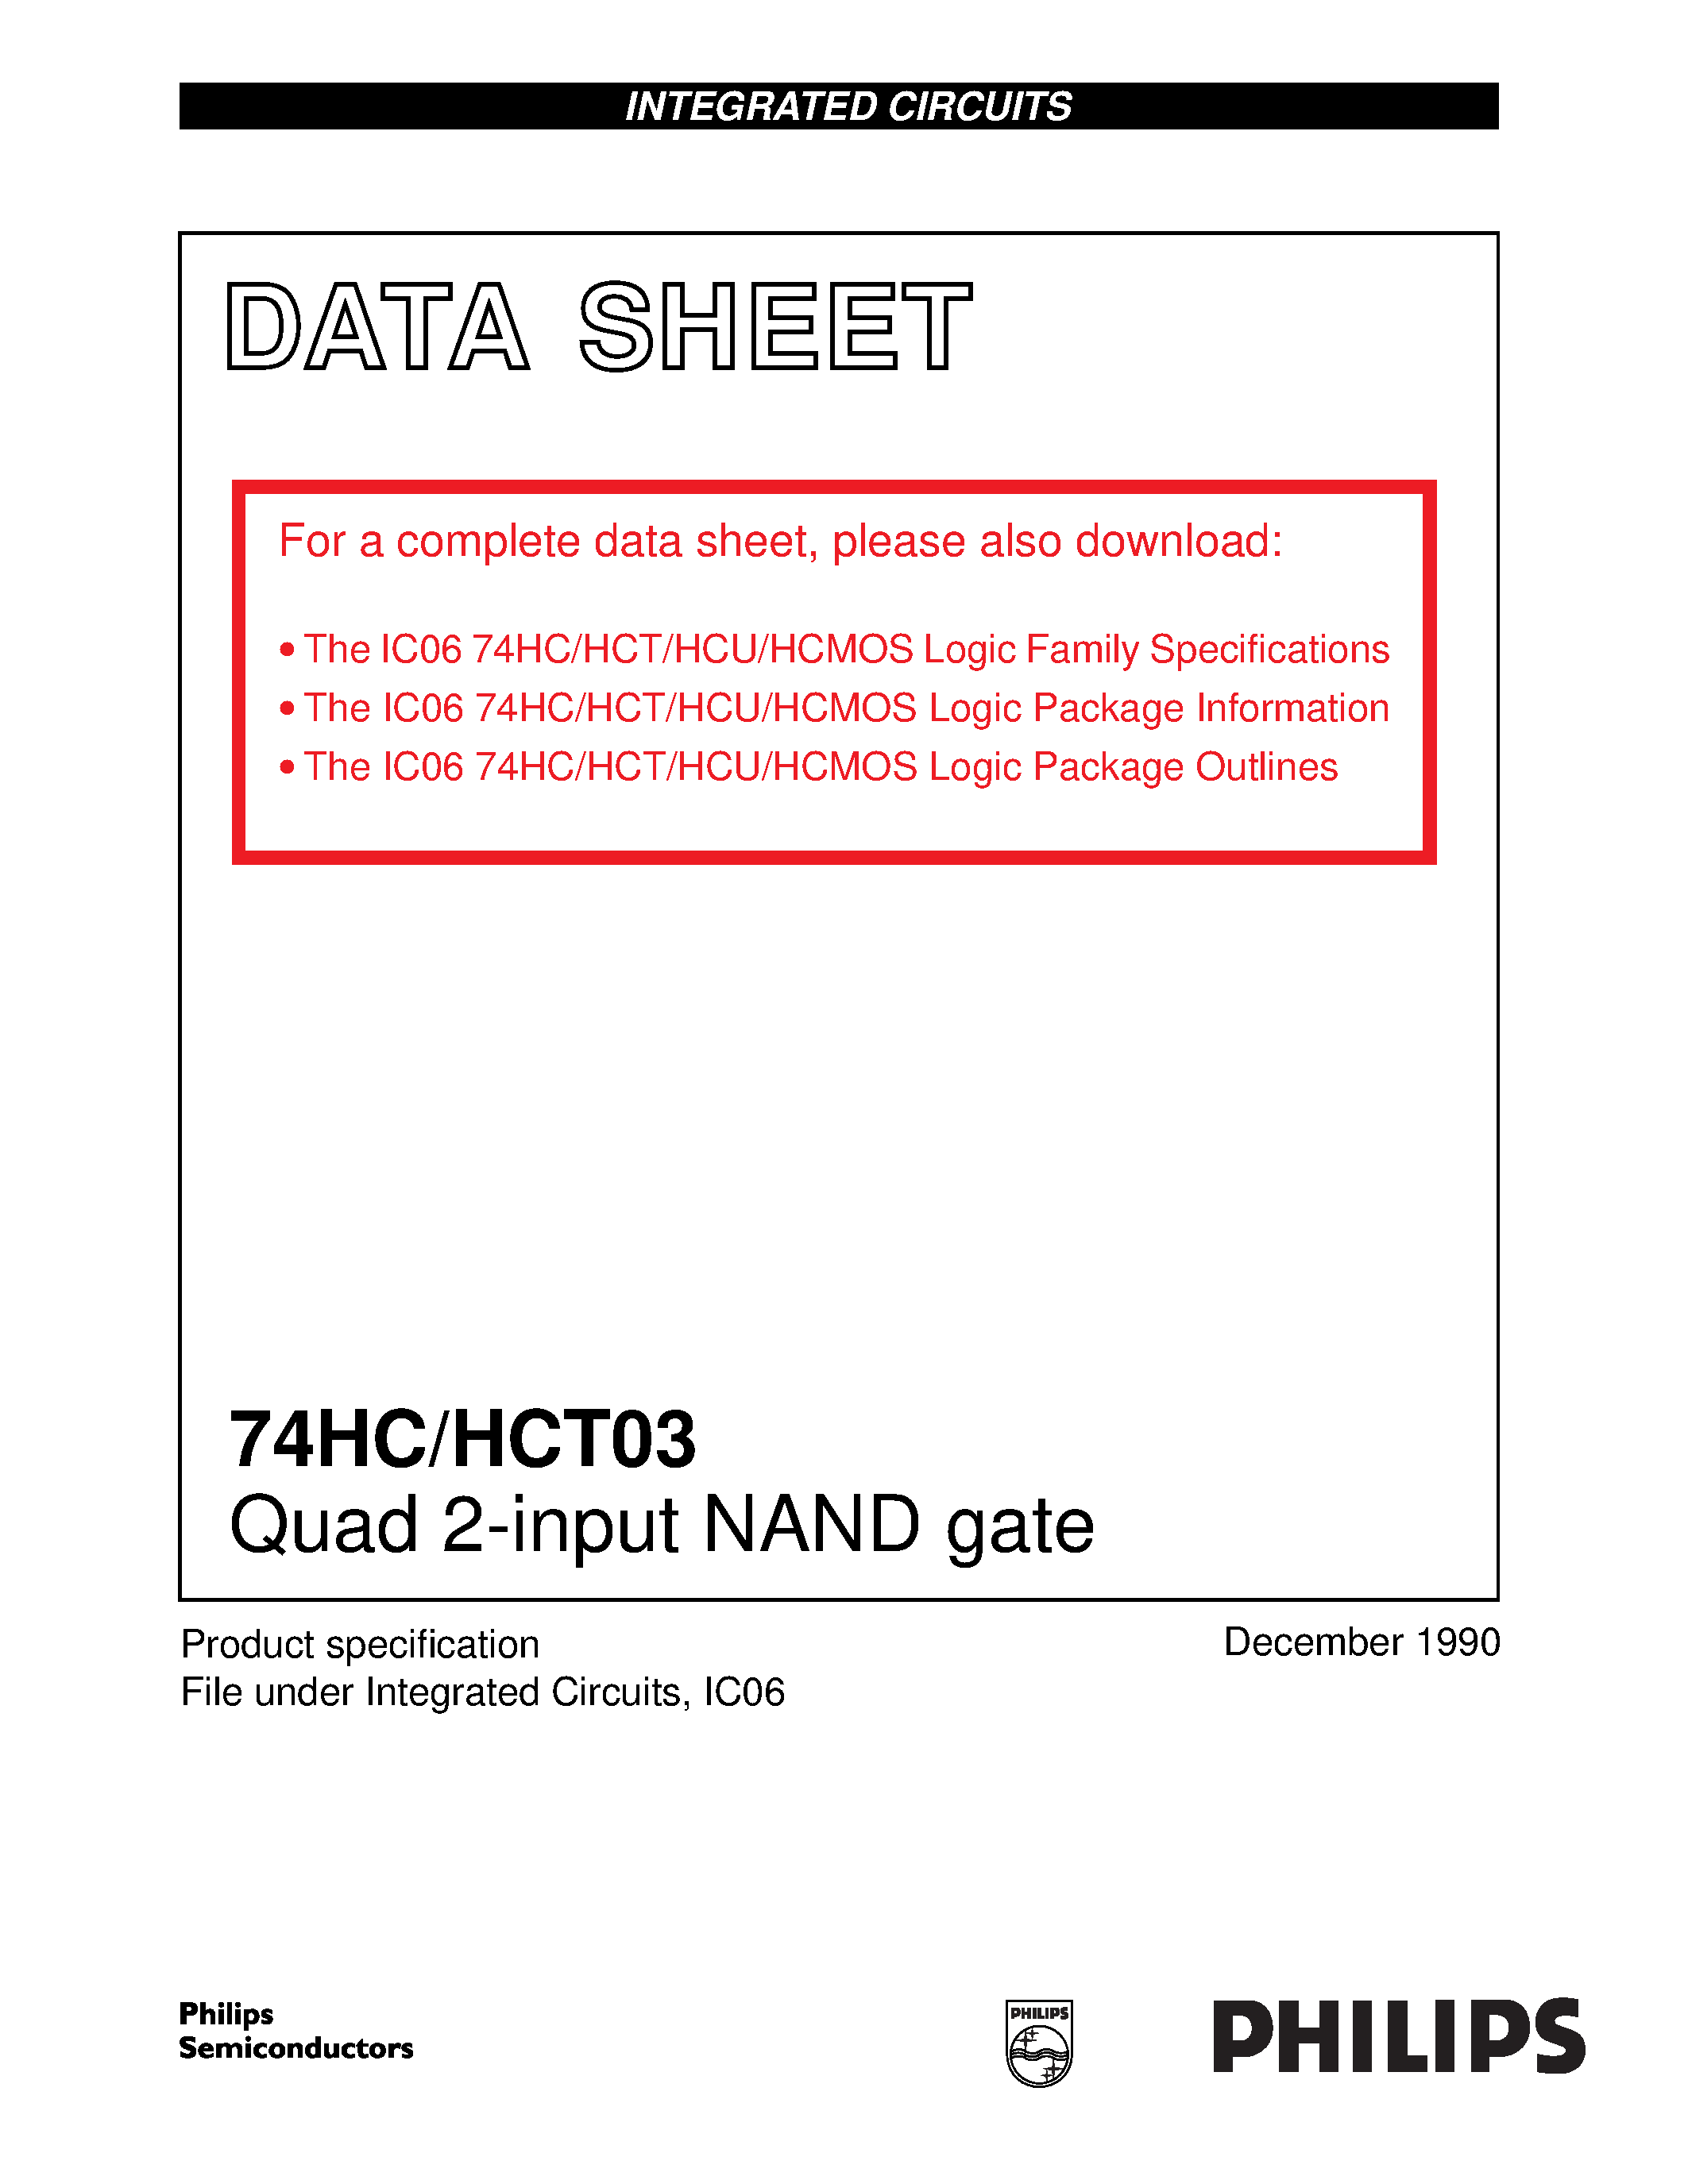 Даташит 74HCT03 - Quad 2-input NAND gate страница 1